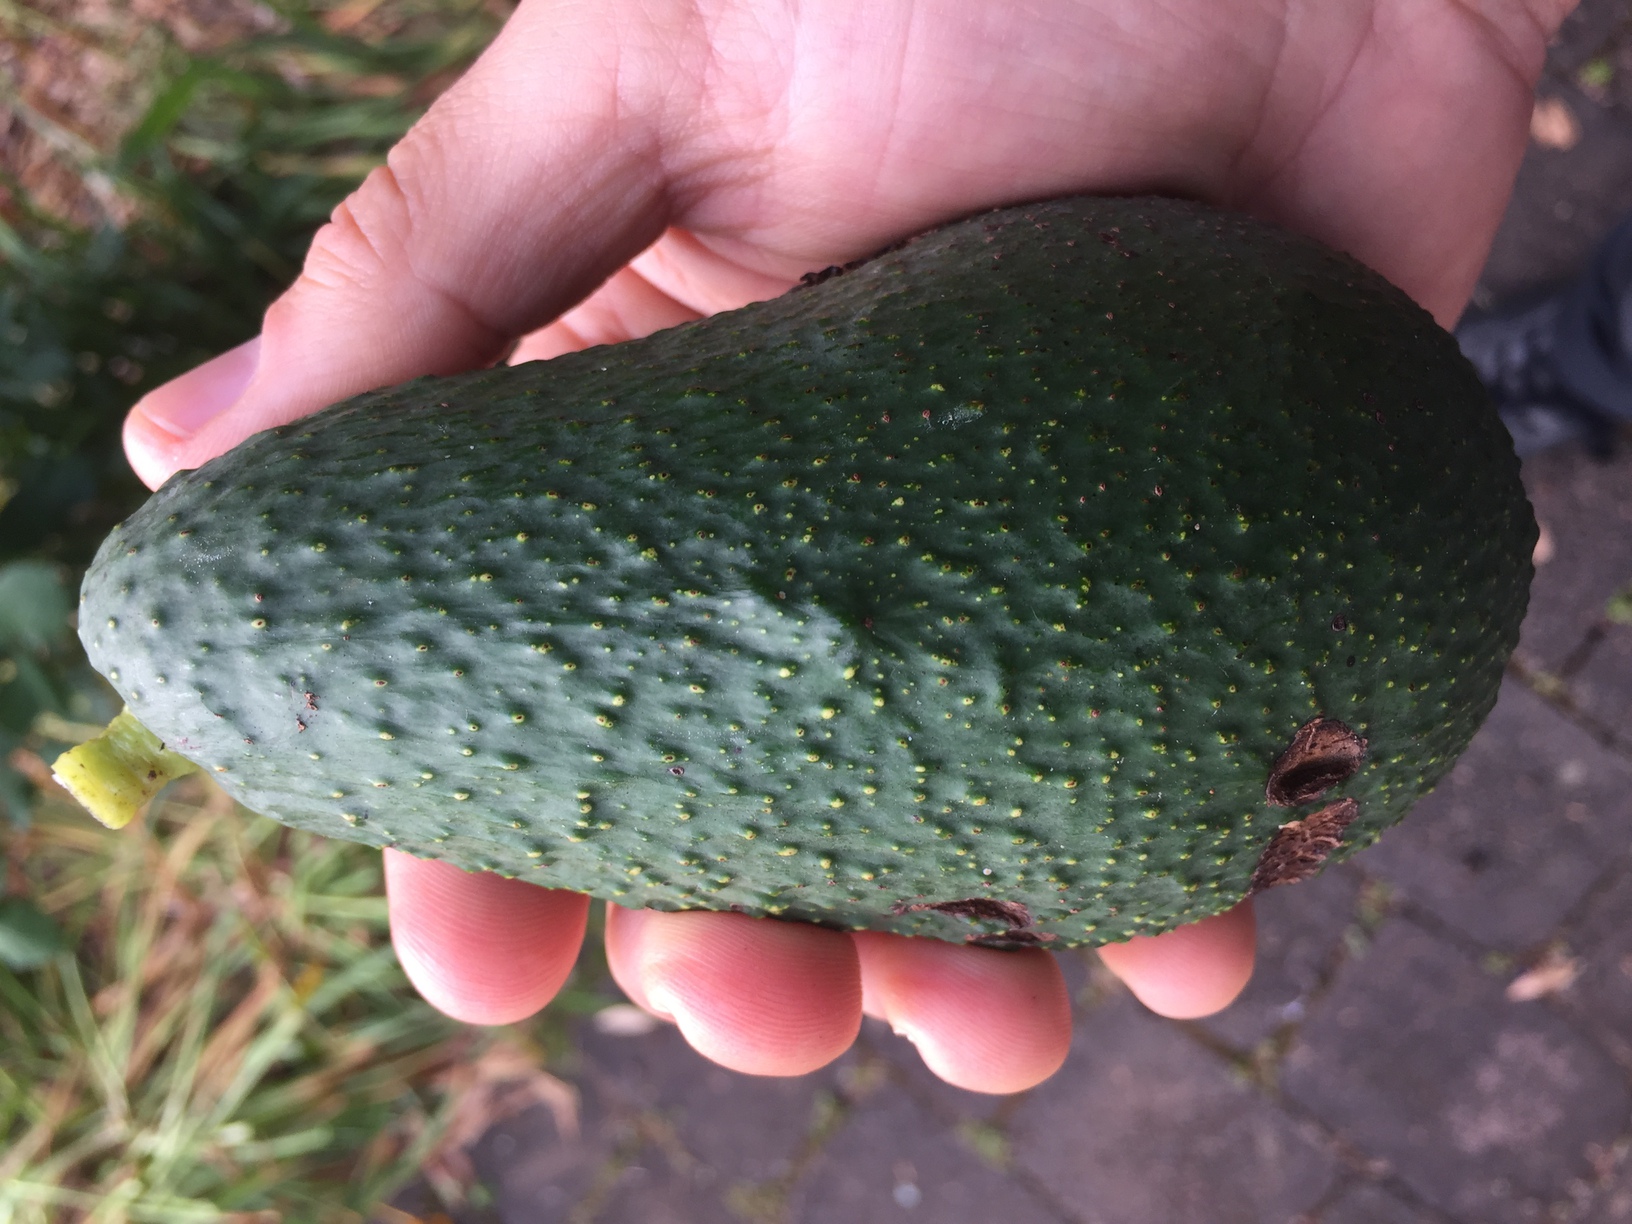 Pinkerton avocado at full size